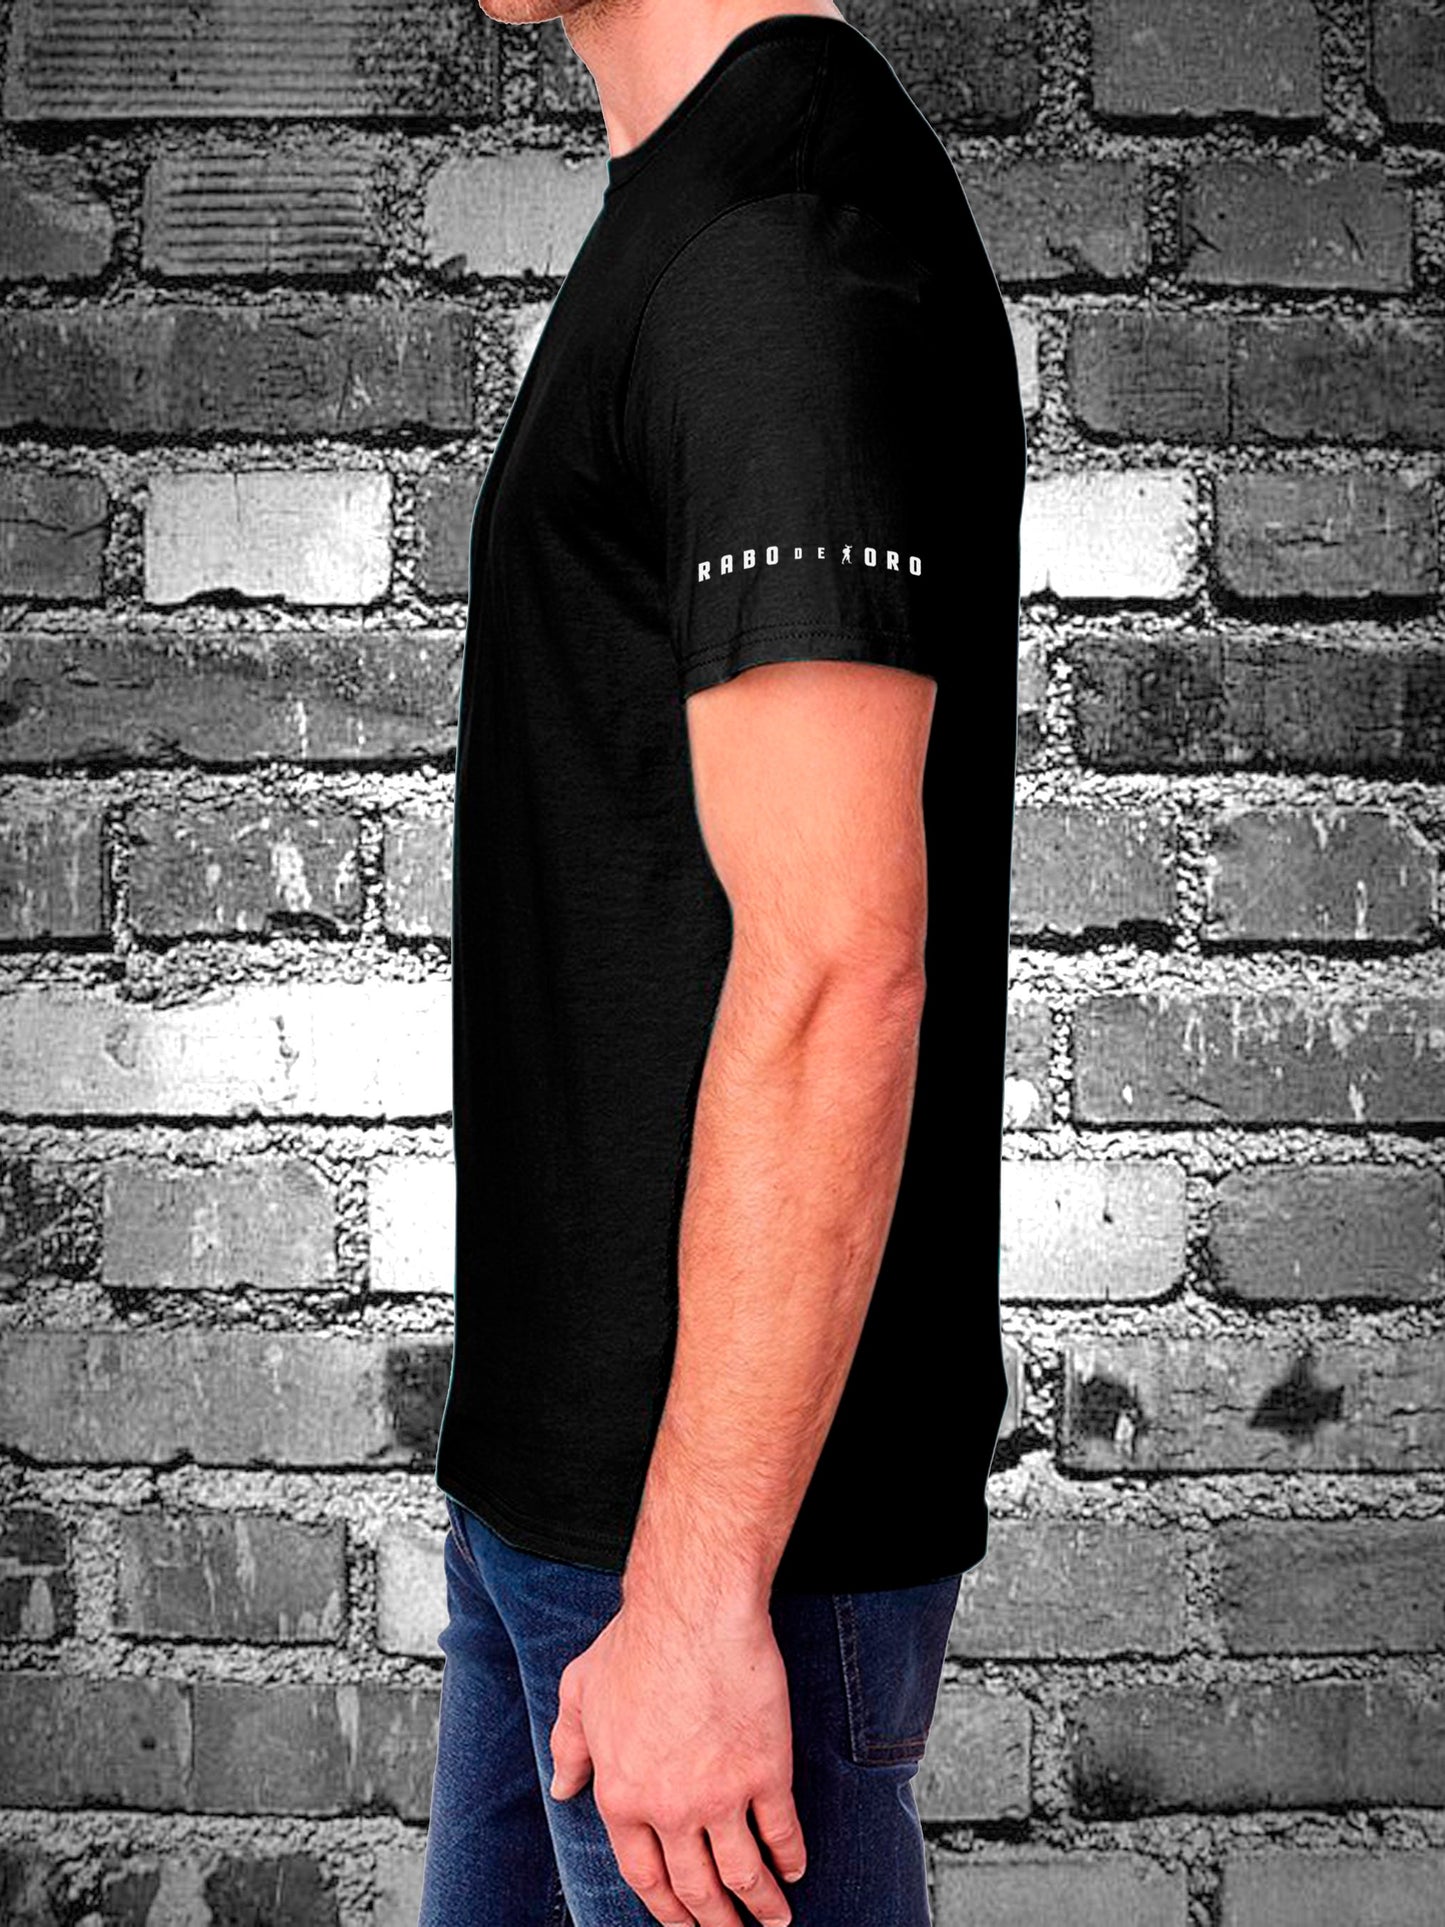 USE ME - Camiseta negra con detalles de Tally Marks